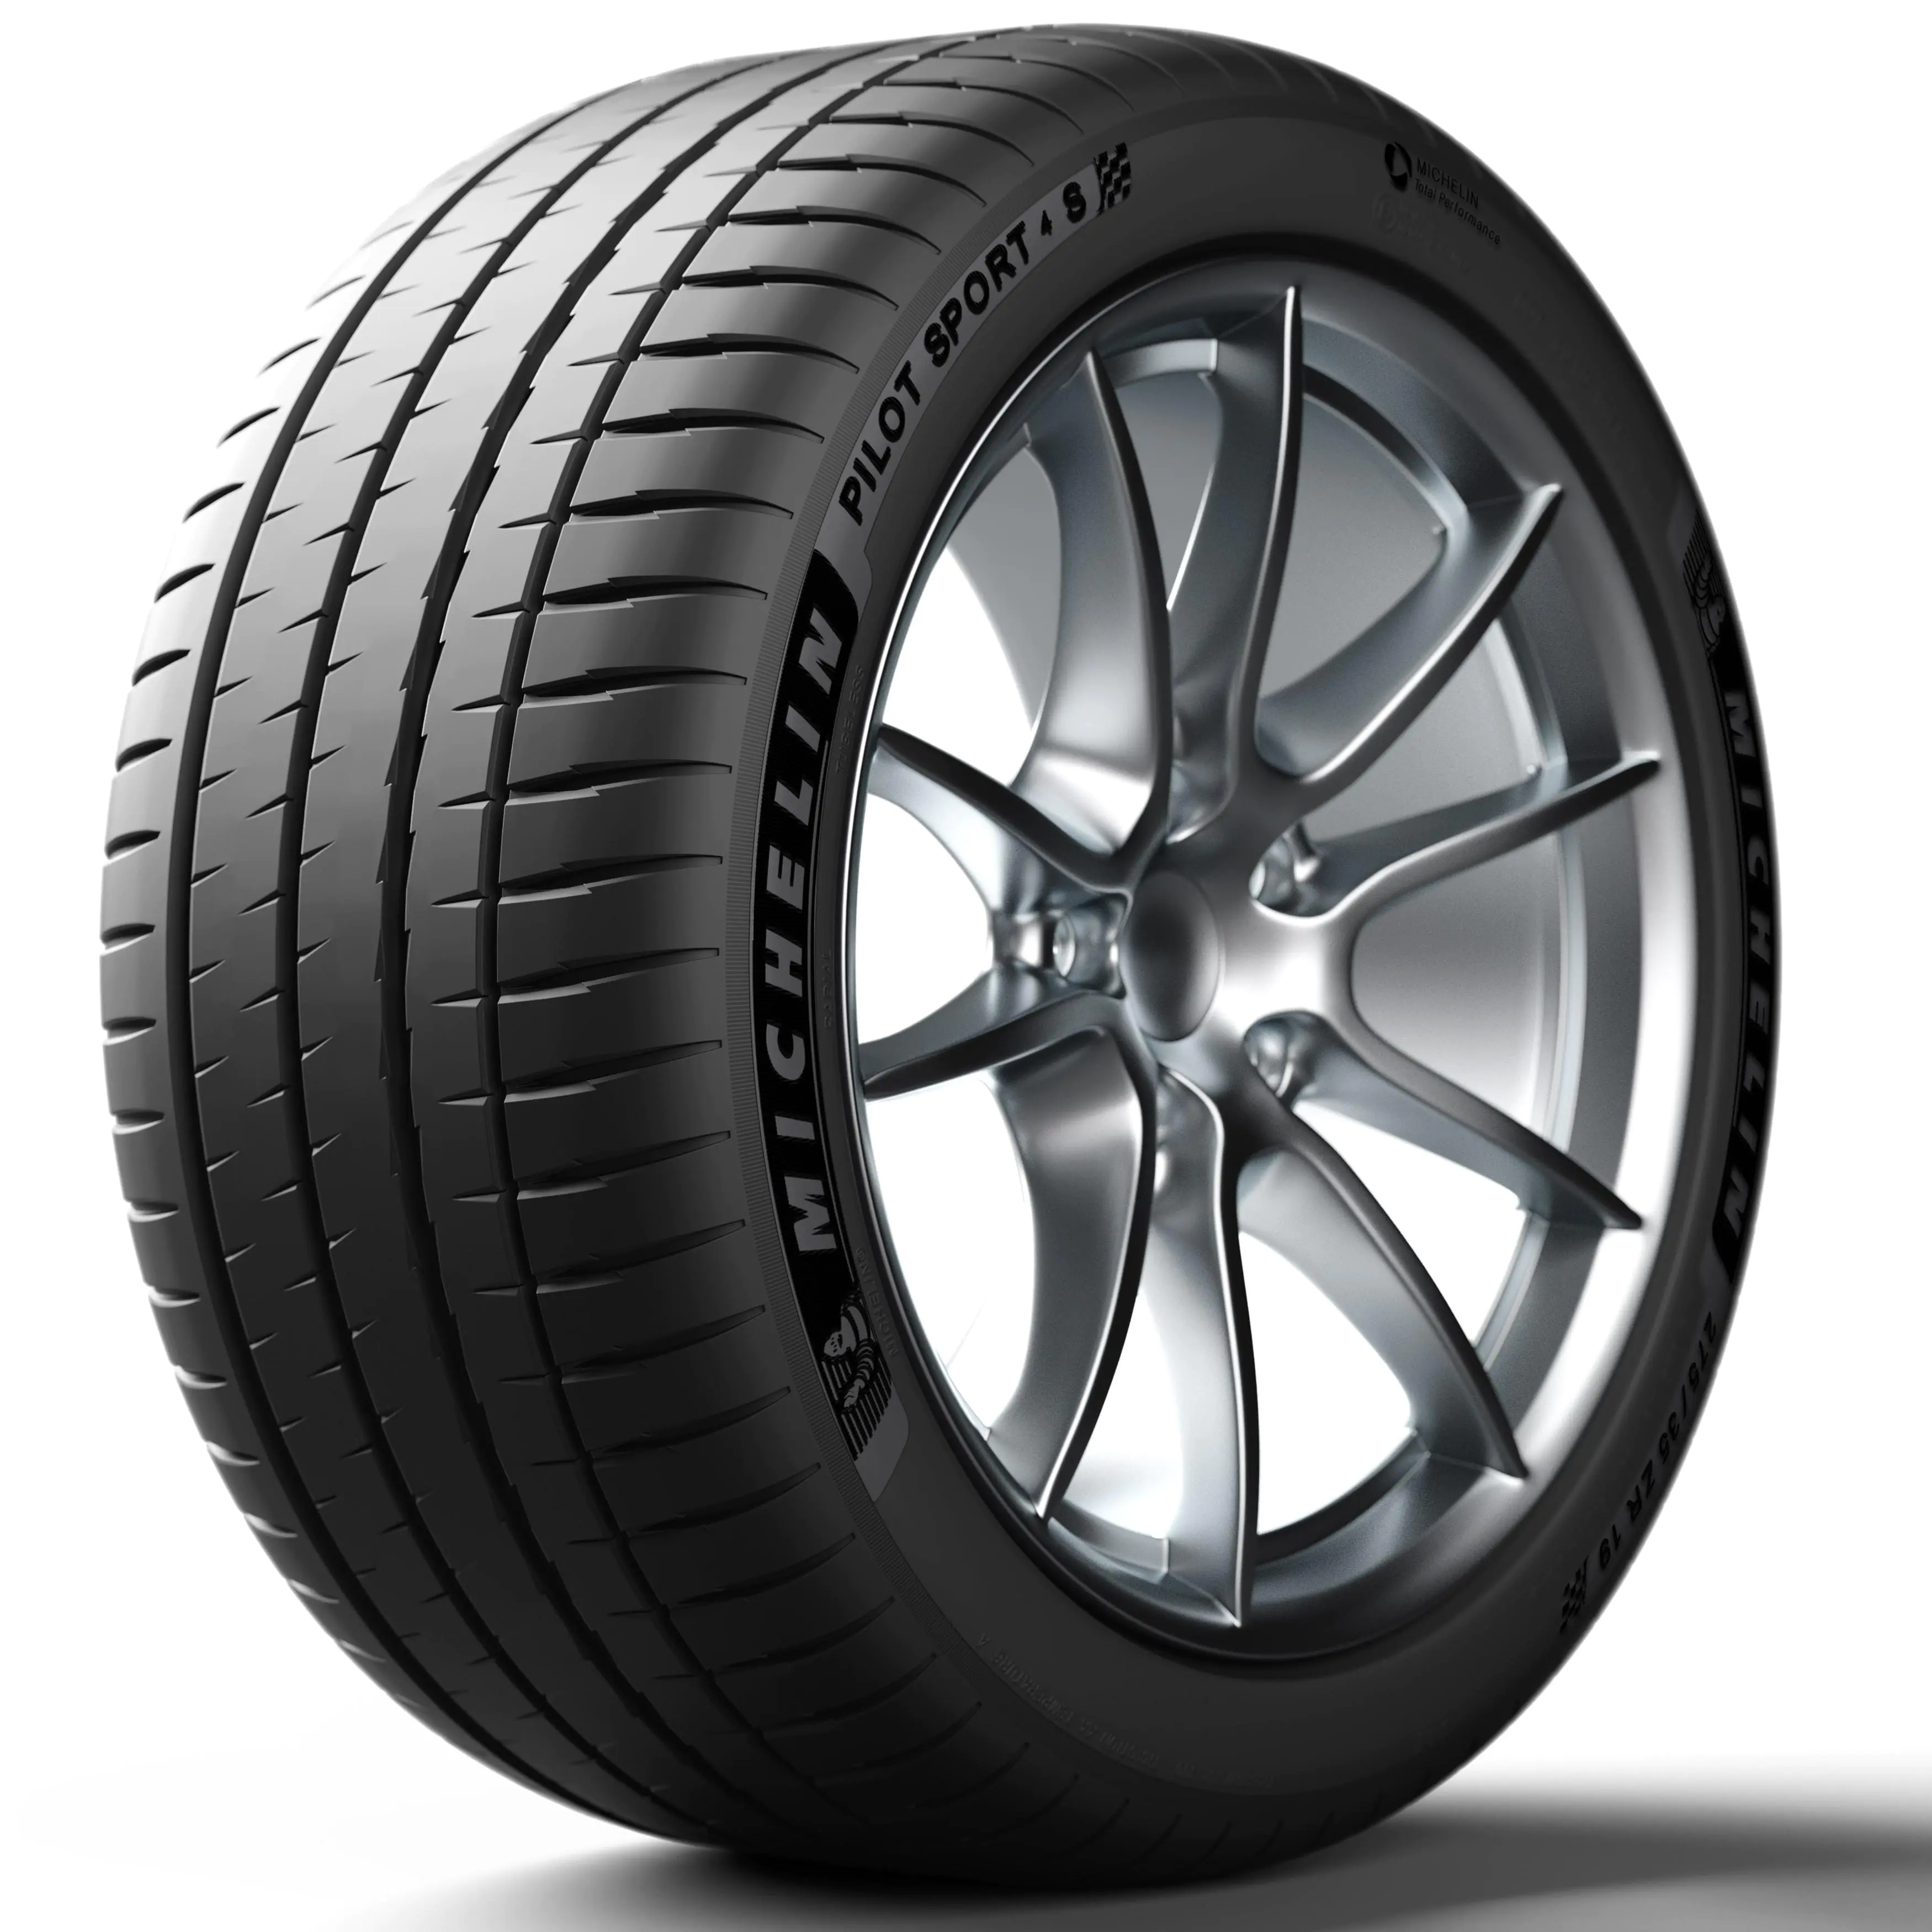 Michelin Michelin 265/35 R20 99Y Pilotsport4s XL pneumatici nuovi Estivo 